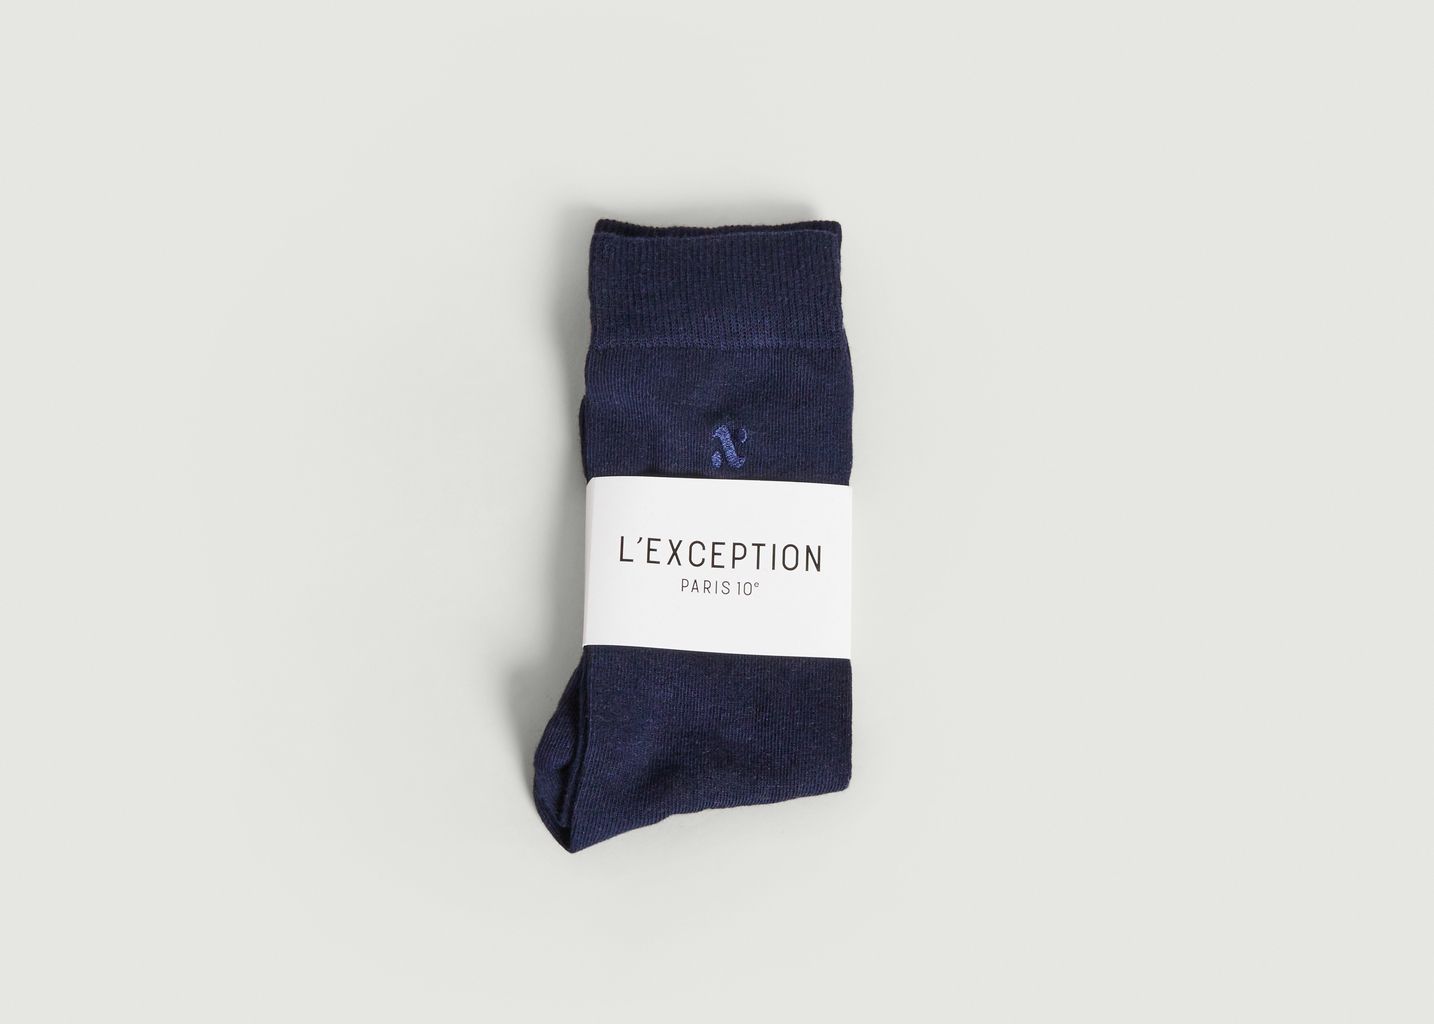 Chaussettes brodées MIF - L'Exception Paris